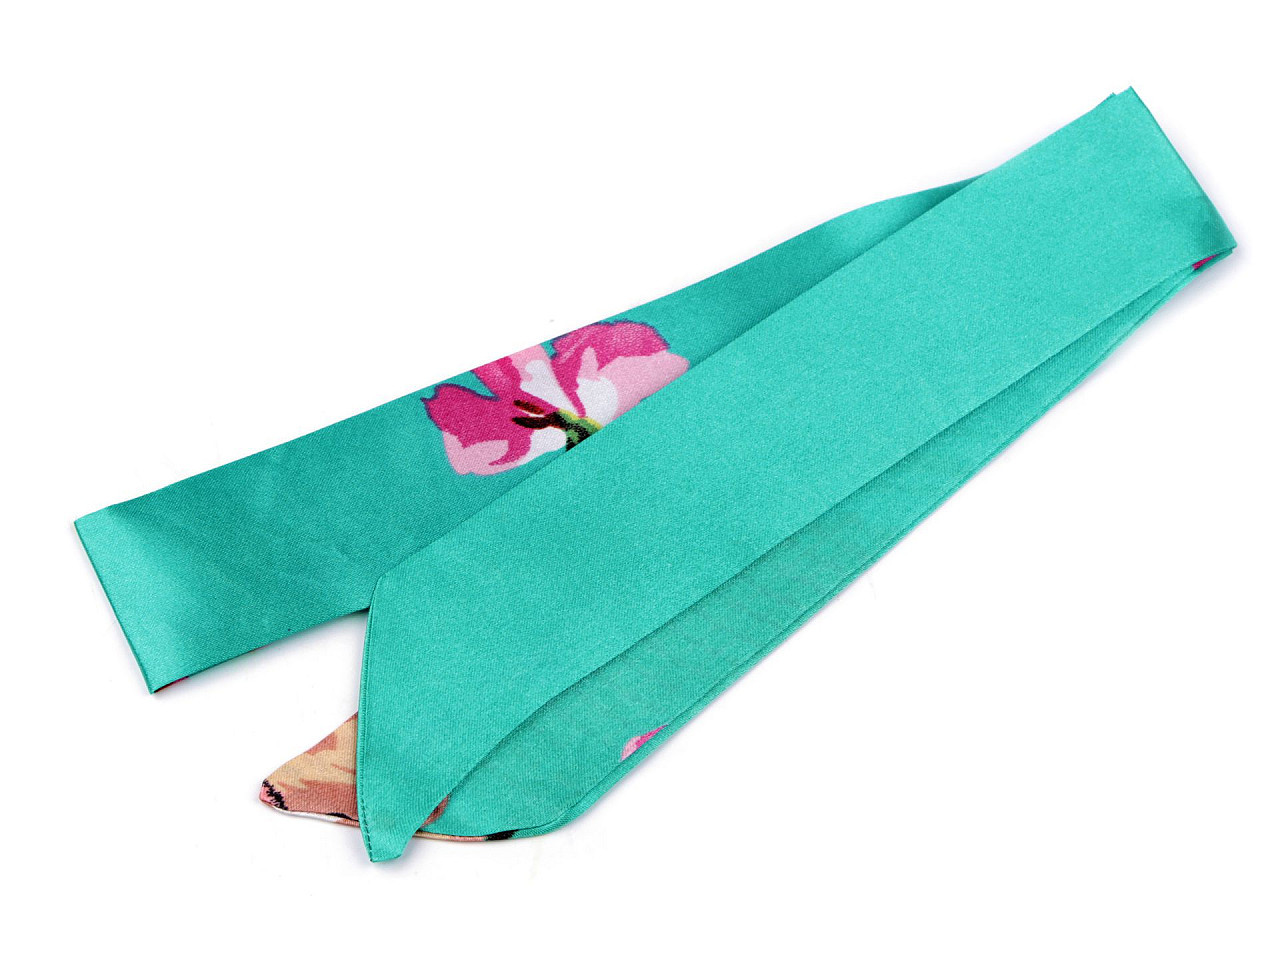 Šátek úzký do vlasů, na krk, na kabelku jednobarevný, s květy, barva 11 zelená mořská květy